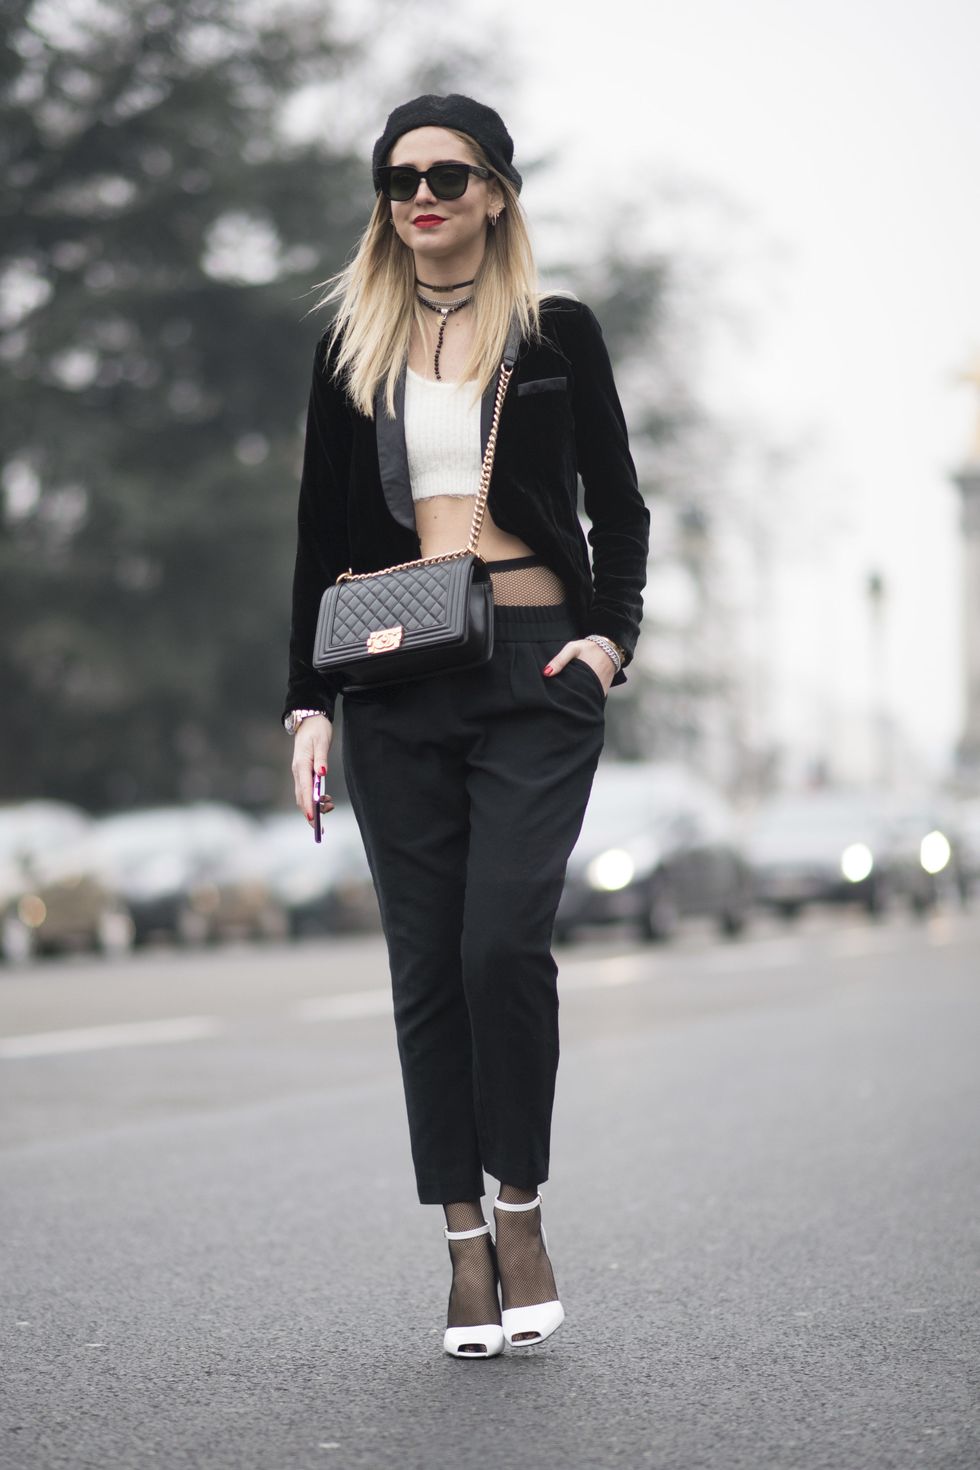 <p>Il 24 gennaio 2017 a Parigi, per la sfilata di Chanel, Chiara Ferragni ha indossato una mise che sarebbe piaciuta molto a Madamoiselle Coco: giacca e pantalone neri, sandali peep toe e top bianco, baschetto francese d'ordinanza e una Chanel 2.55 a tracolla.&nbsp;Et voilà!</p>